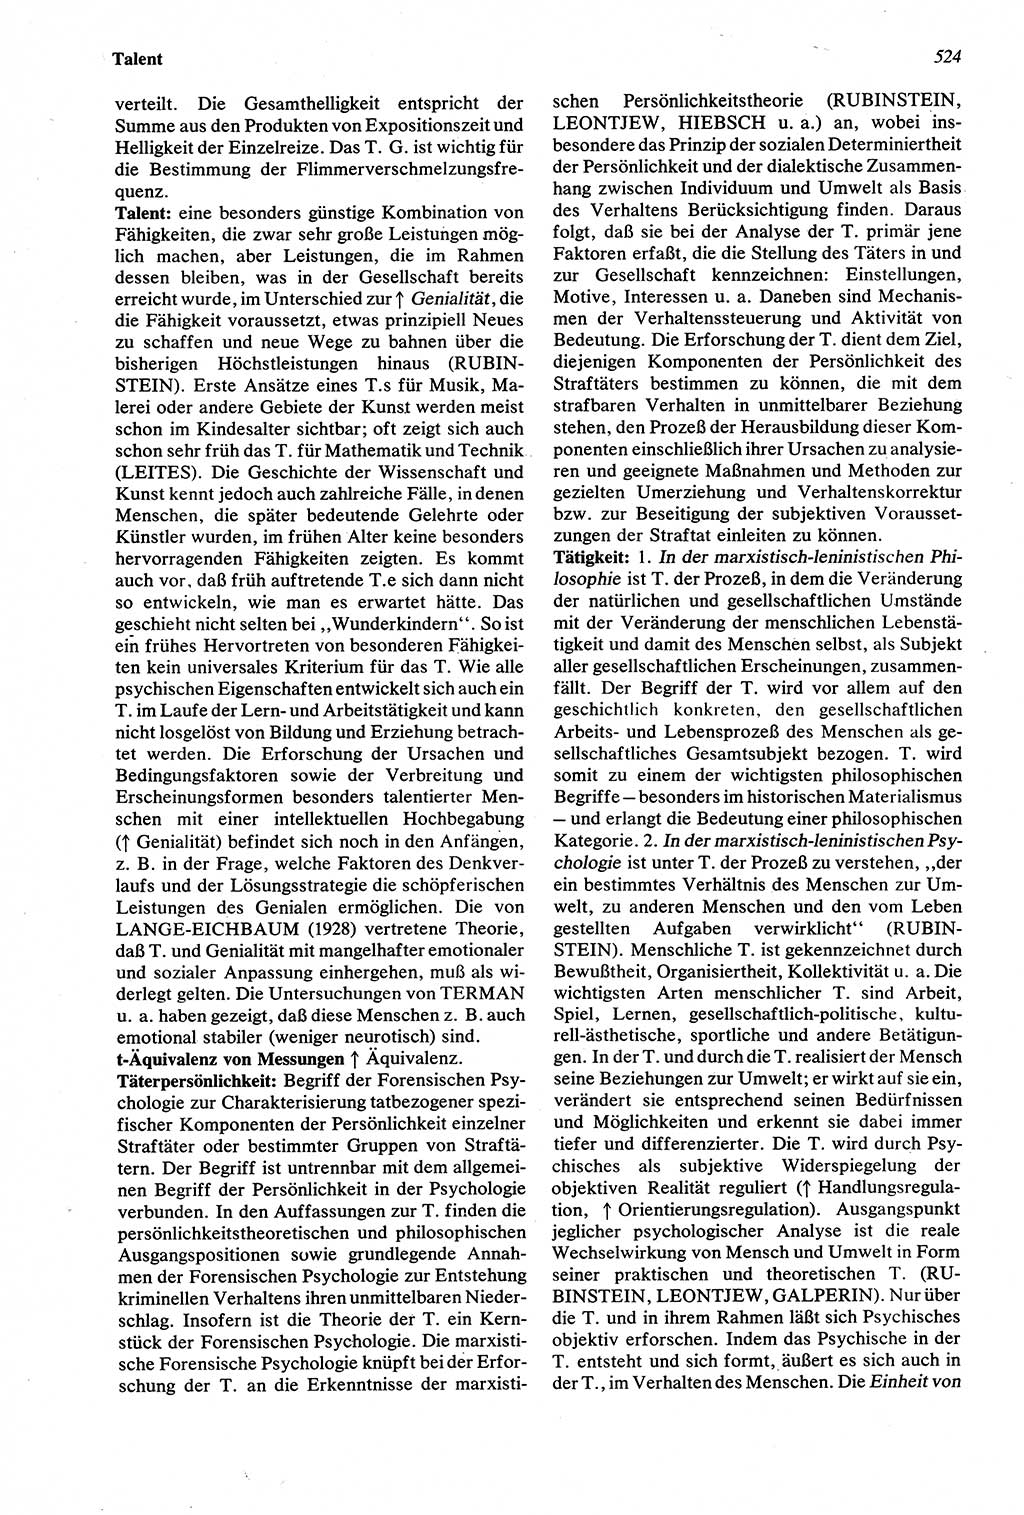 Wörterbuch der Psychologie [Deutsche Demokratische Republik (DDR)] 1976, Seite 524 (Wb. Psych. DDR 1976, S. 524)